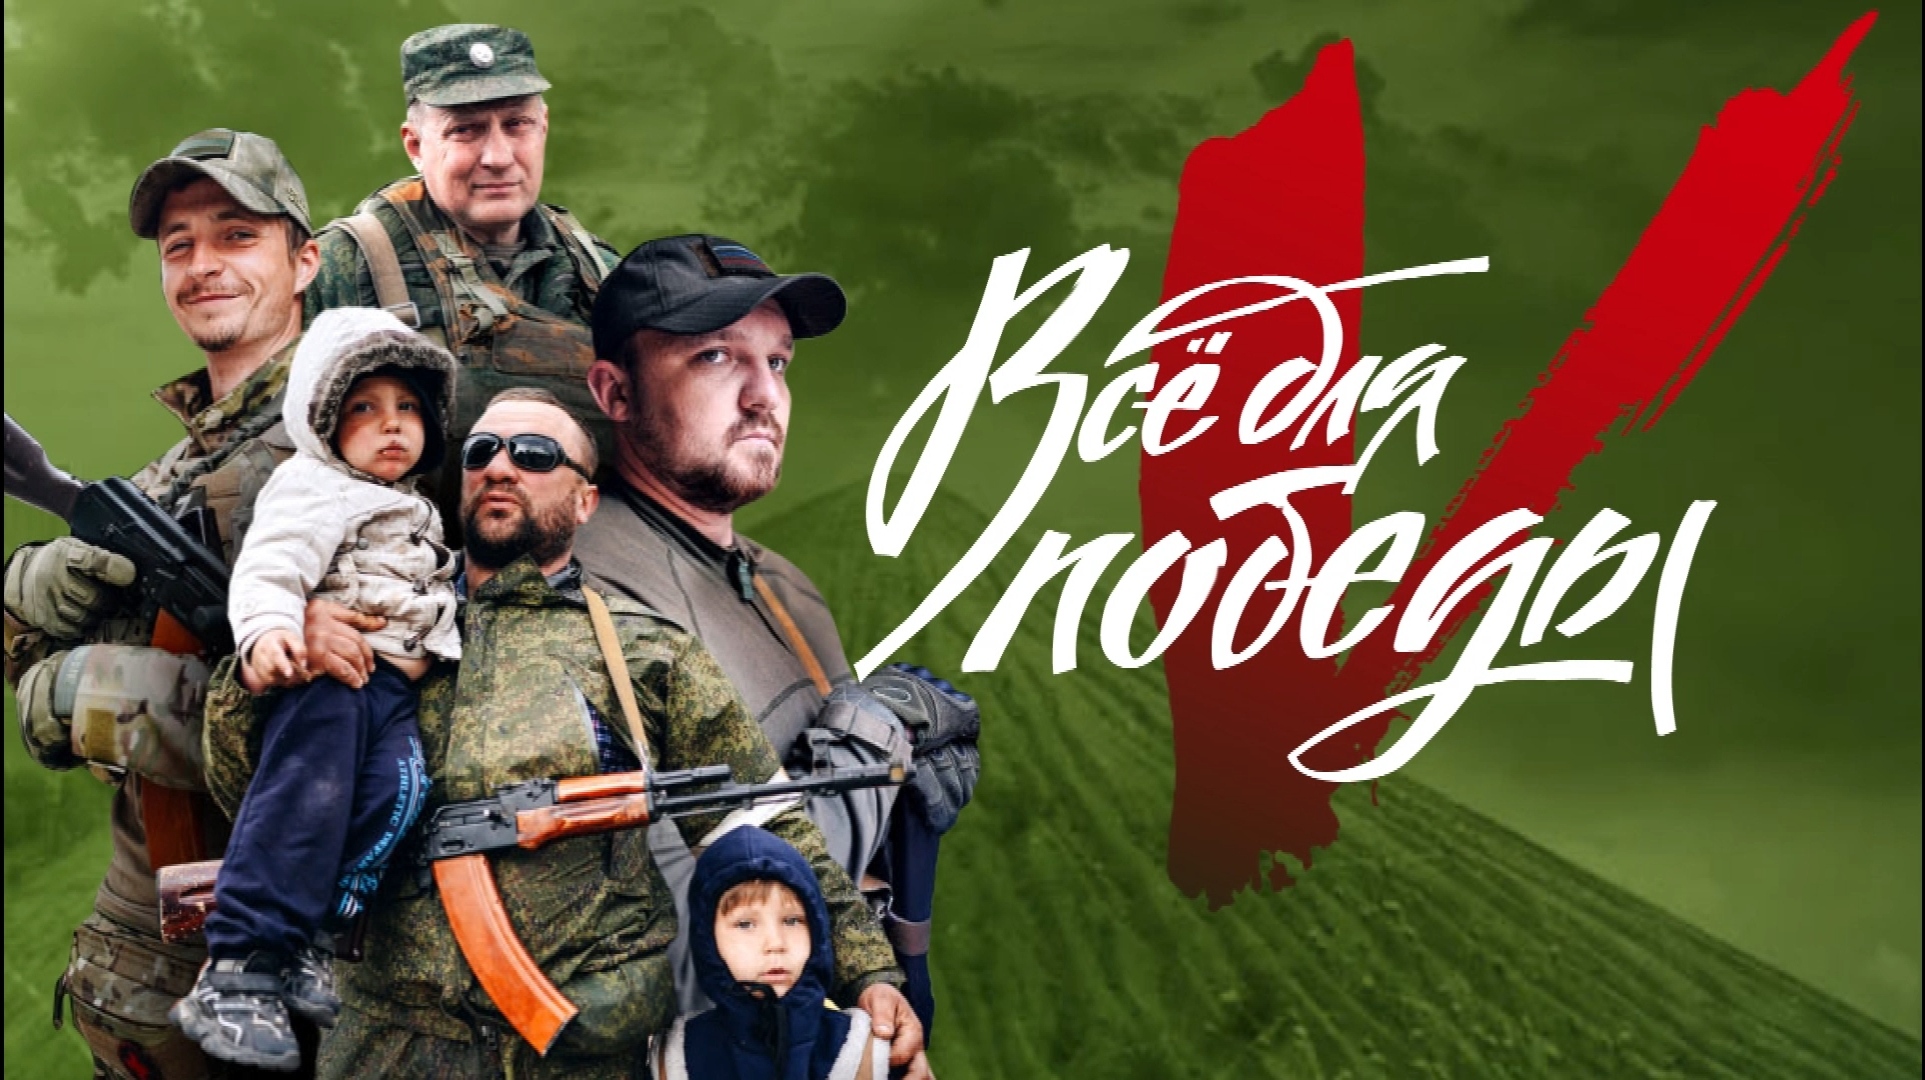 «Всё для победы!» - ярославец на личные средства купил летние комплекты одежды для воинов ДНР и ЛНР